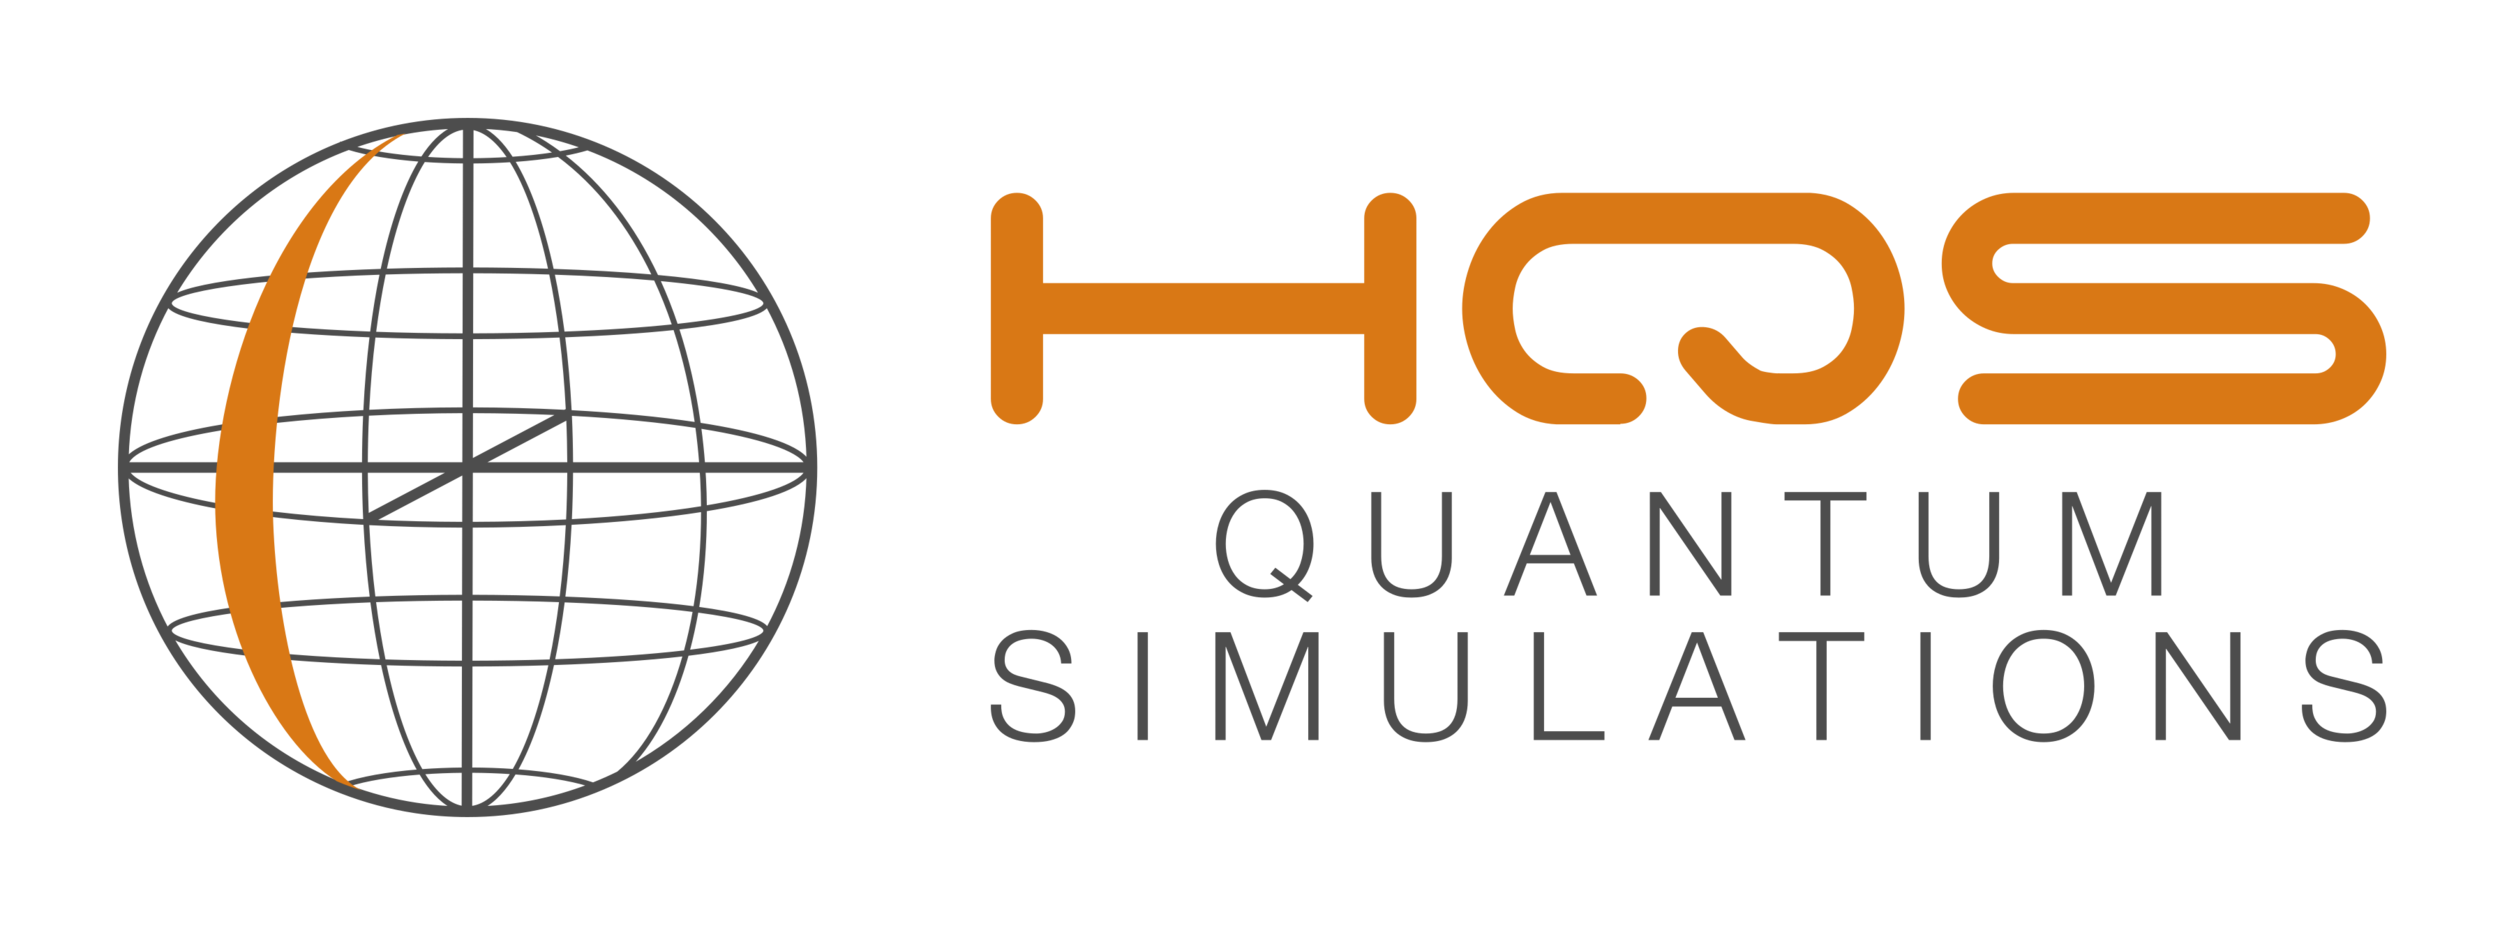 HSQ Quantum Simulations